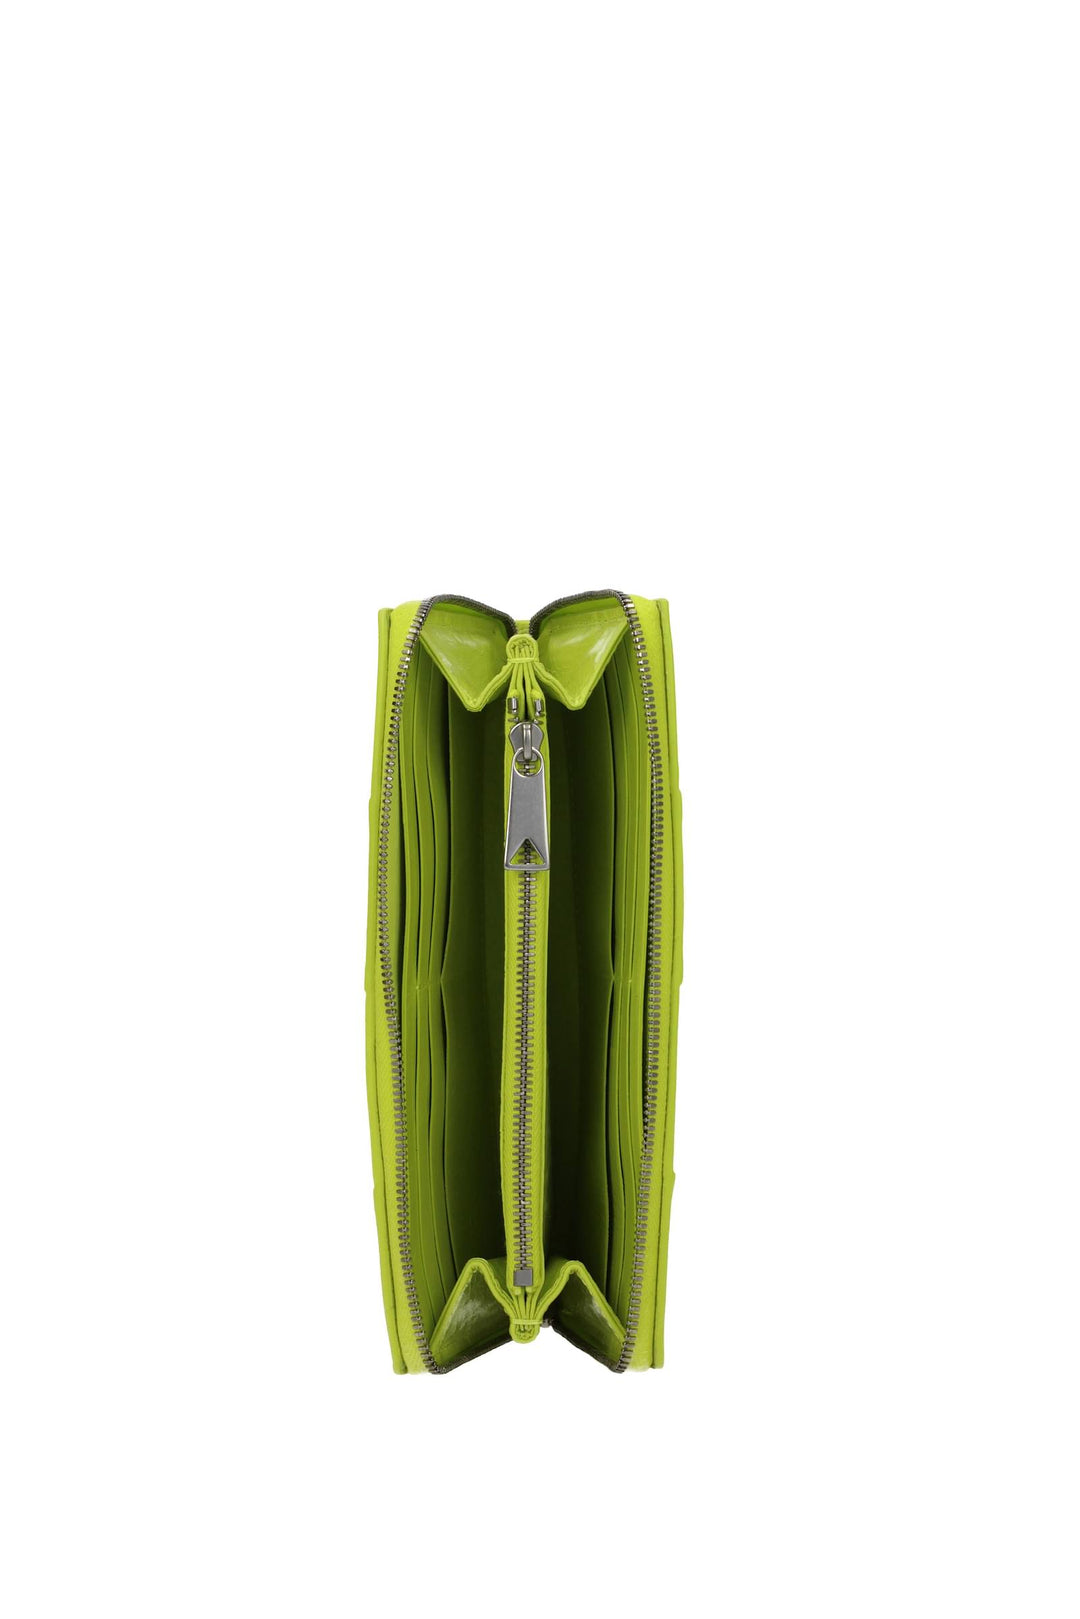 Portafogli Pelle Verde Chartreuse - Bottega Veneta - Donna